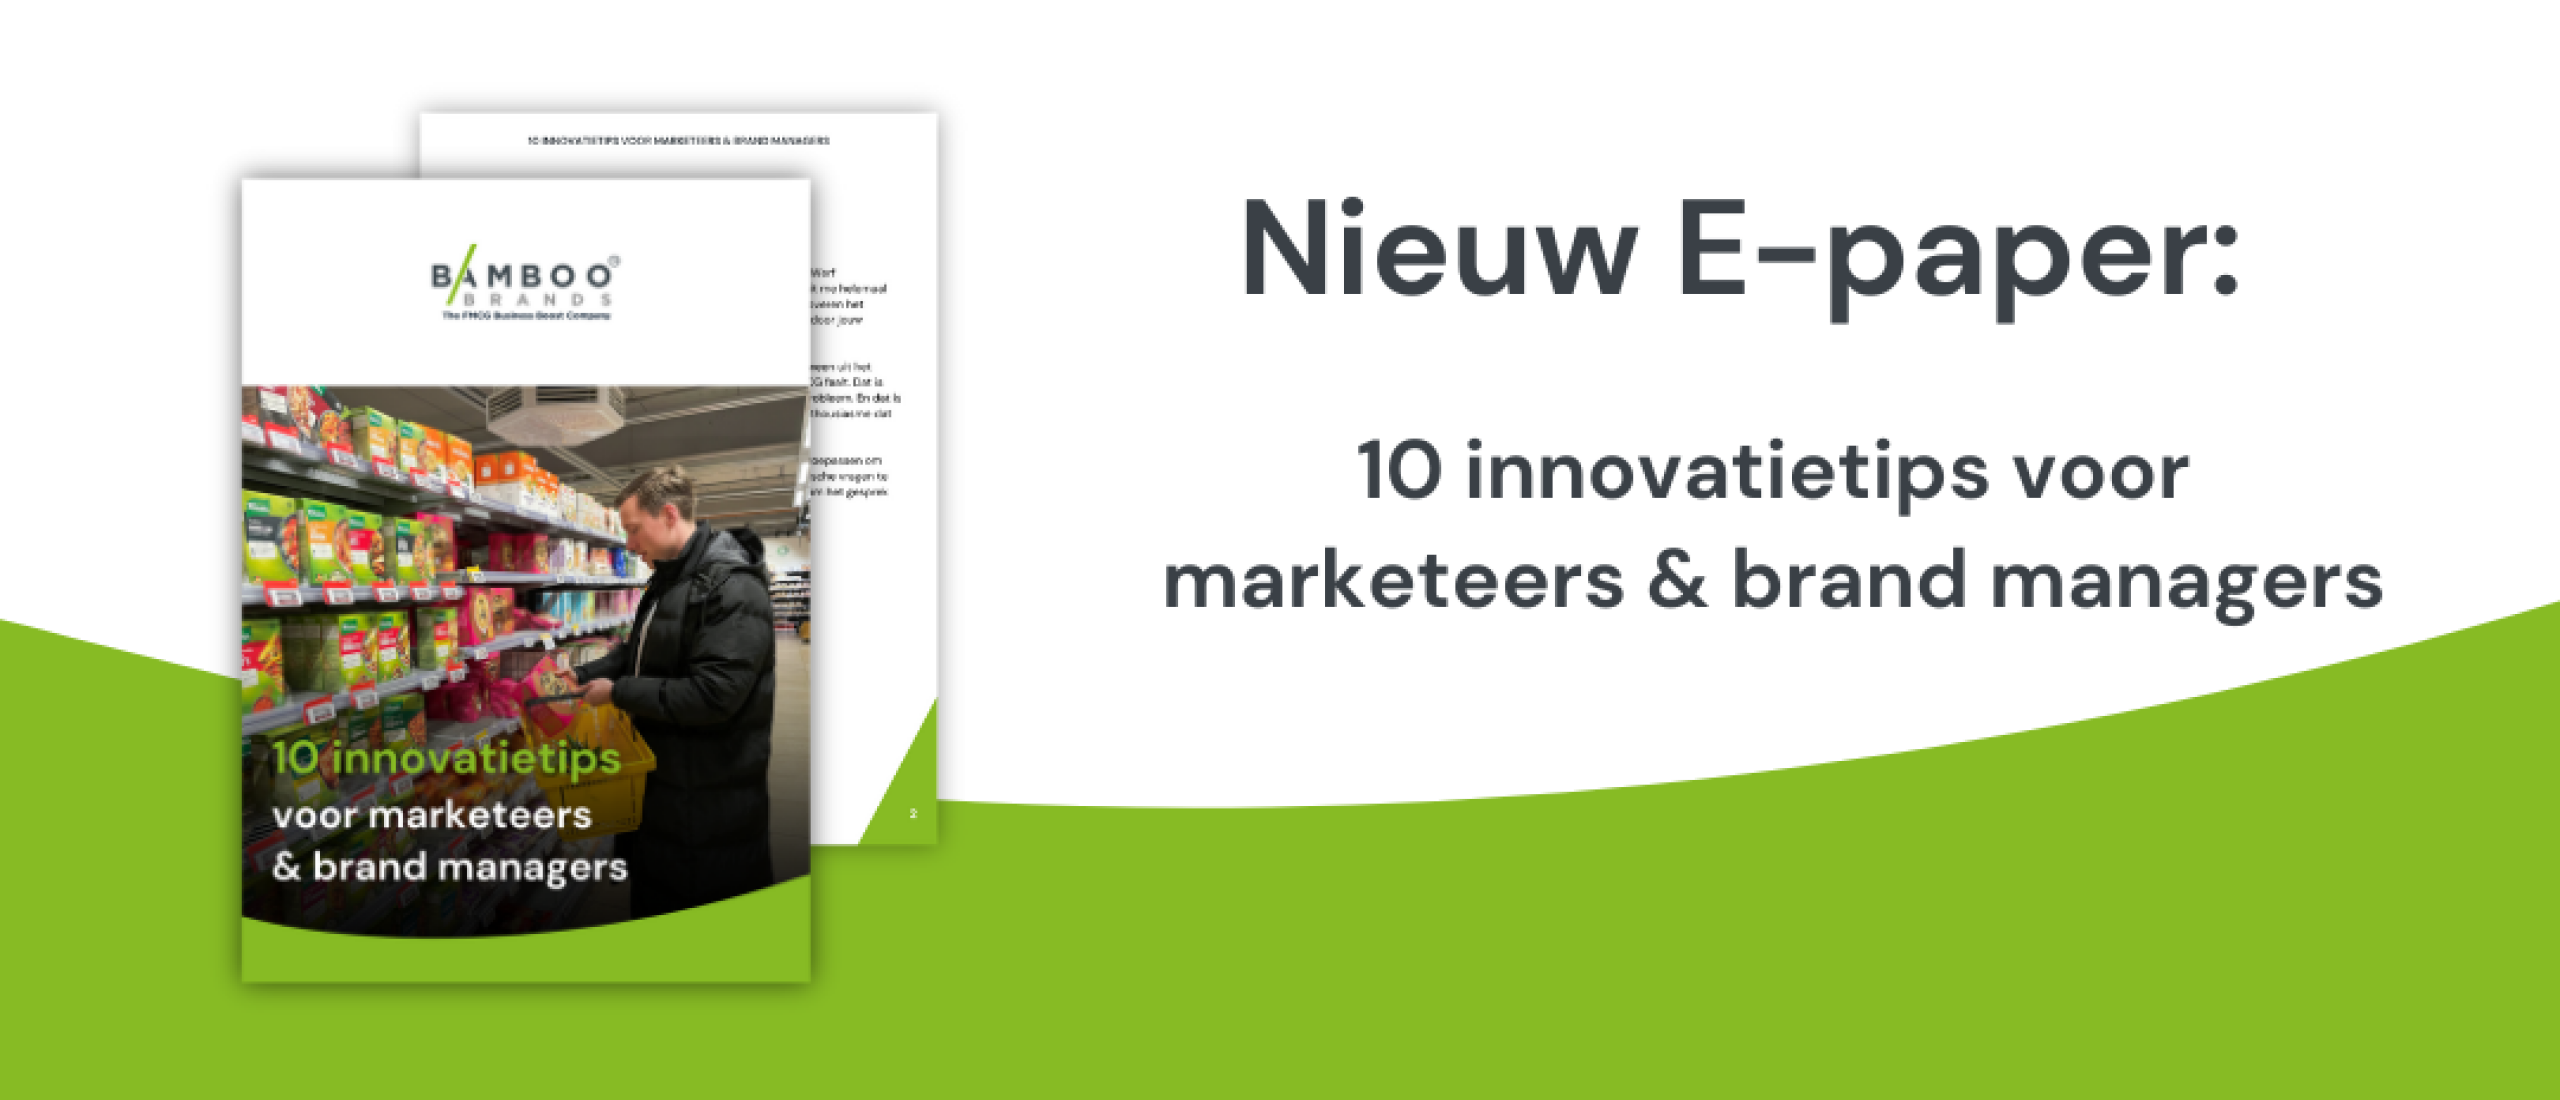 Nieuw e-paper: 10 innovatietips voor marketeers